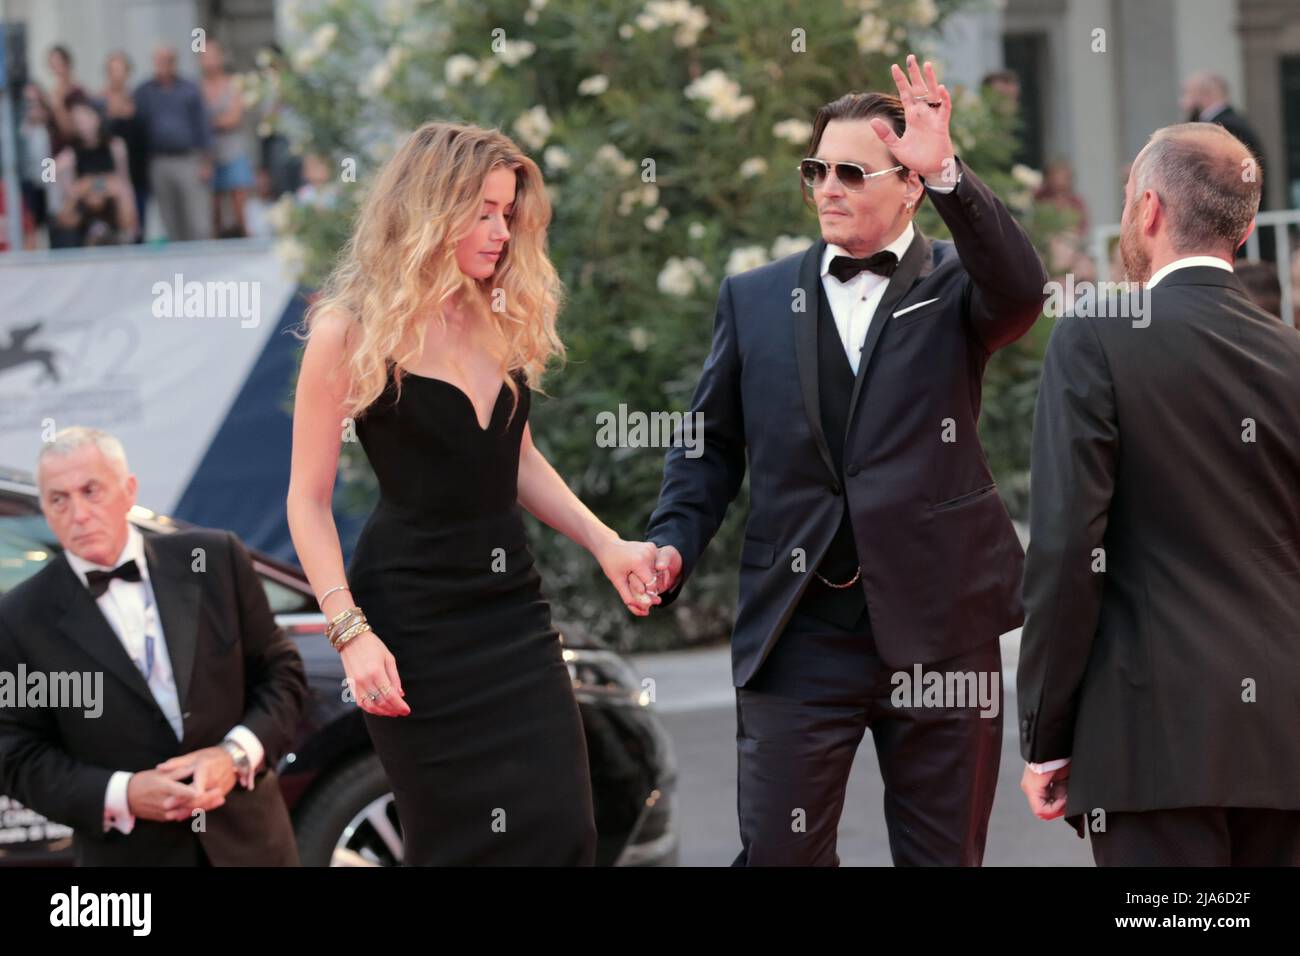 El actor Johnny Depp y su esposa Amber escucharon llegar para el evento de alfombra roja para la película 'Black Mass' en el Festival de Cine de Venecia 72nd. Foto de stock